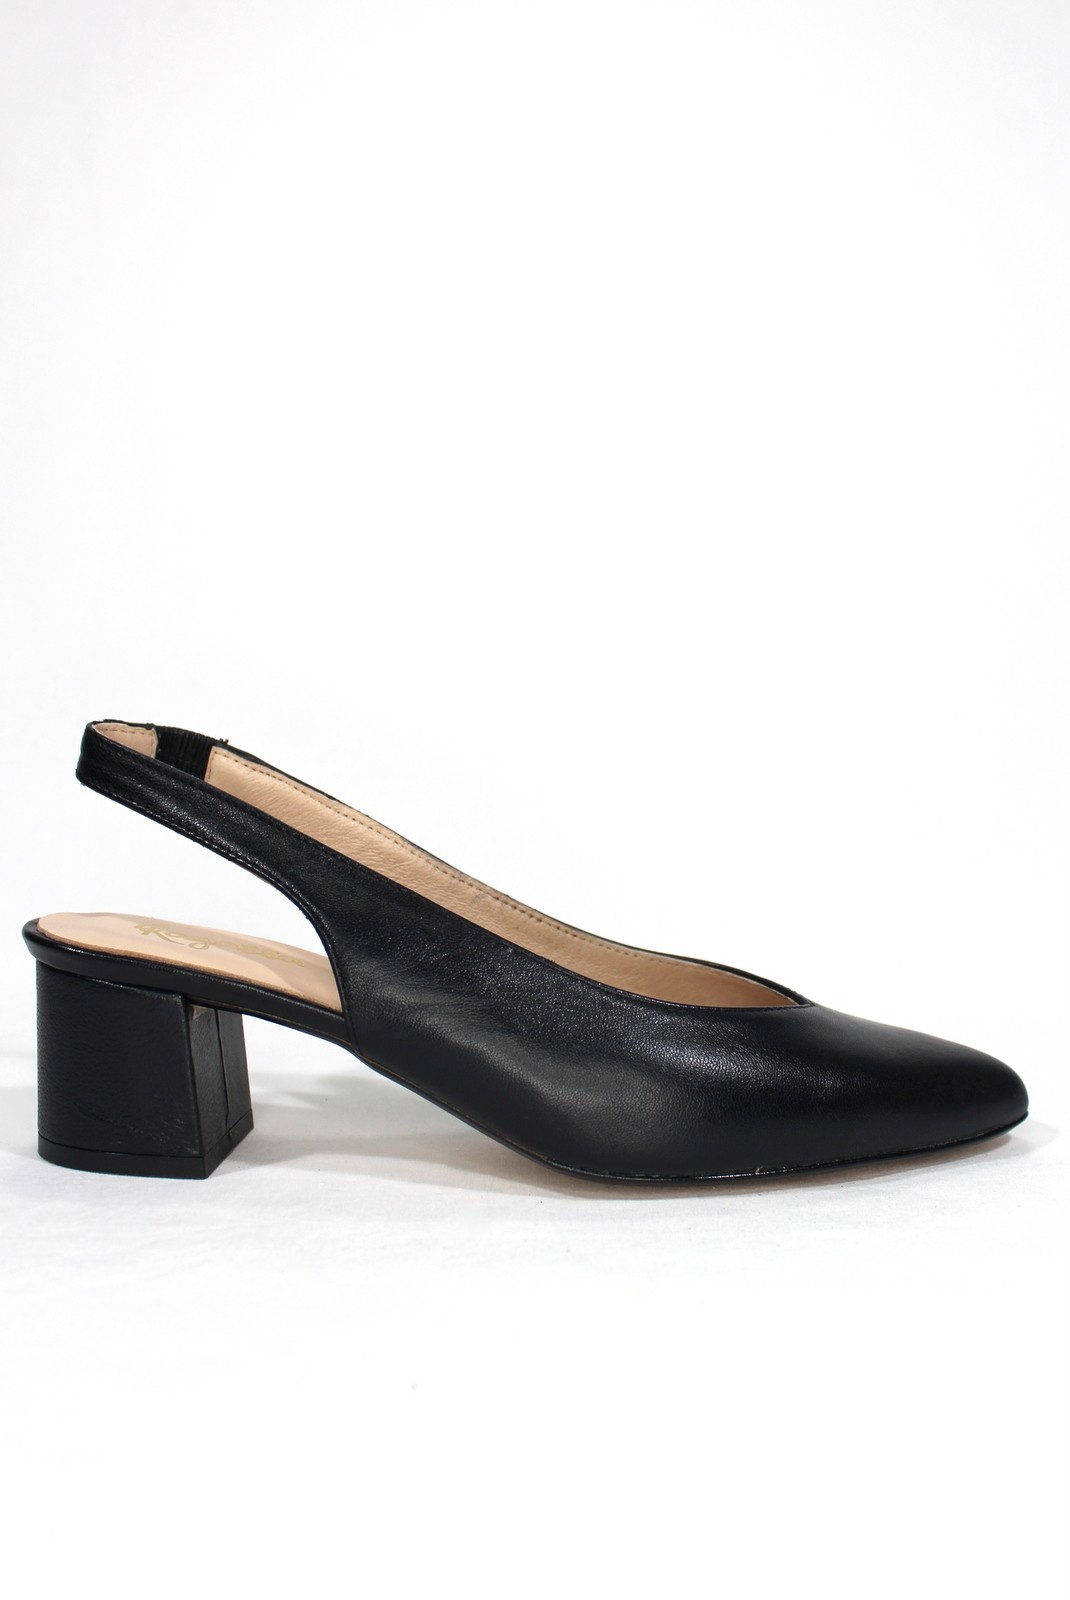 ROLDÁN - Zapato salón de piel . Color negro. Tacón 4 cm. Calzados Losada